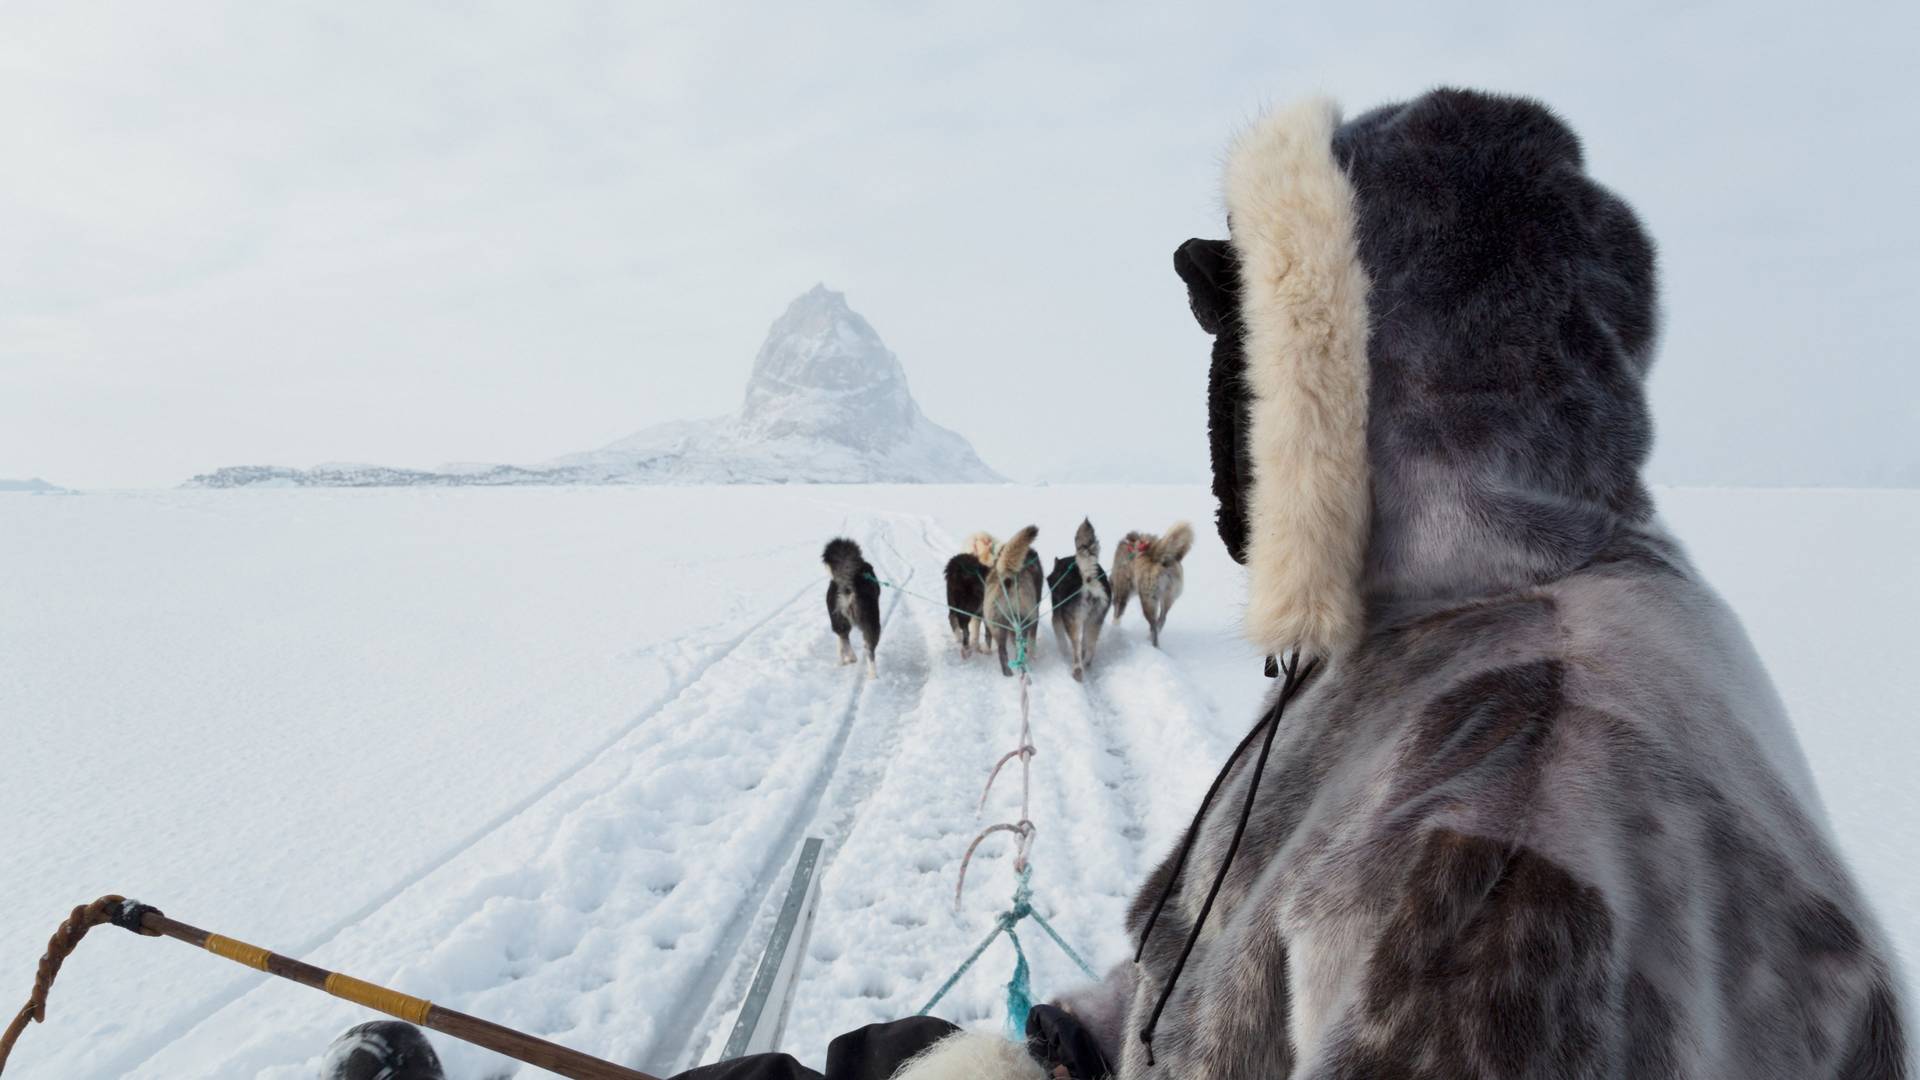 Prelepa i duboko uznemirujuća fotografija s Grenlanda pokazuje kuda ide ovaj svet